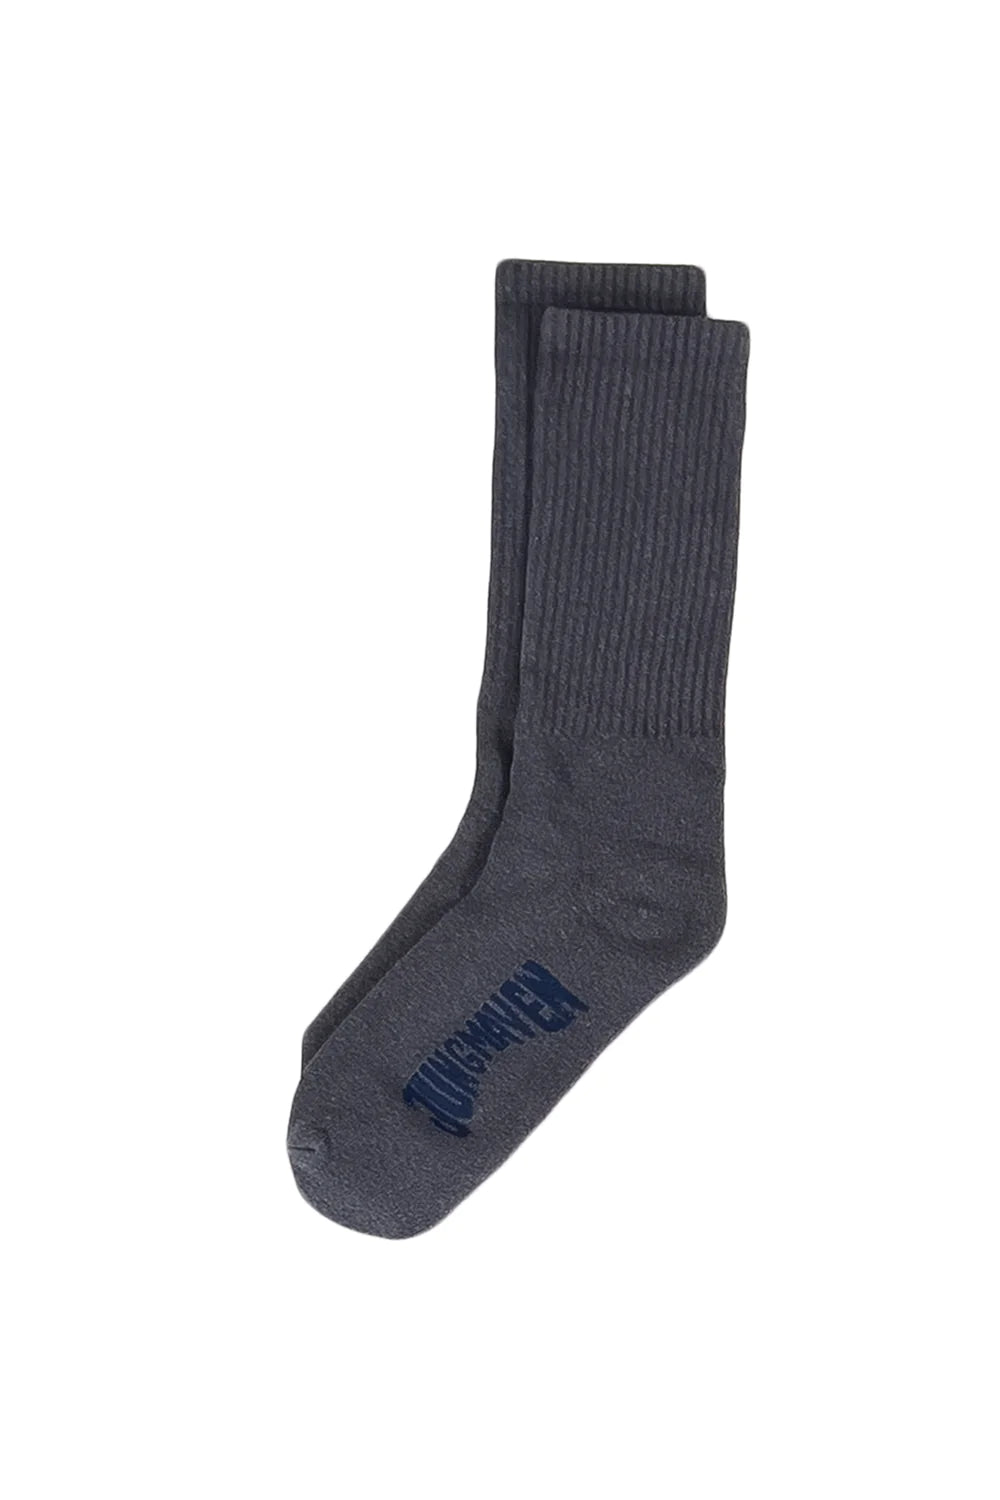 socks + tights – penticton ad hoc